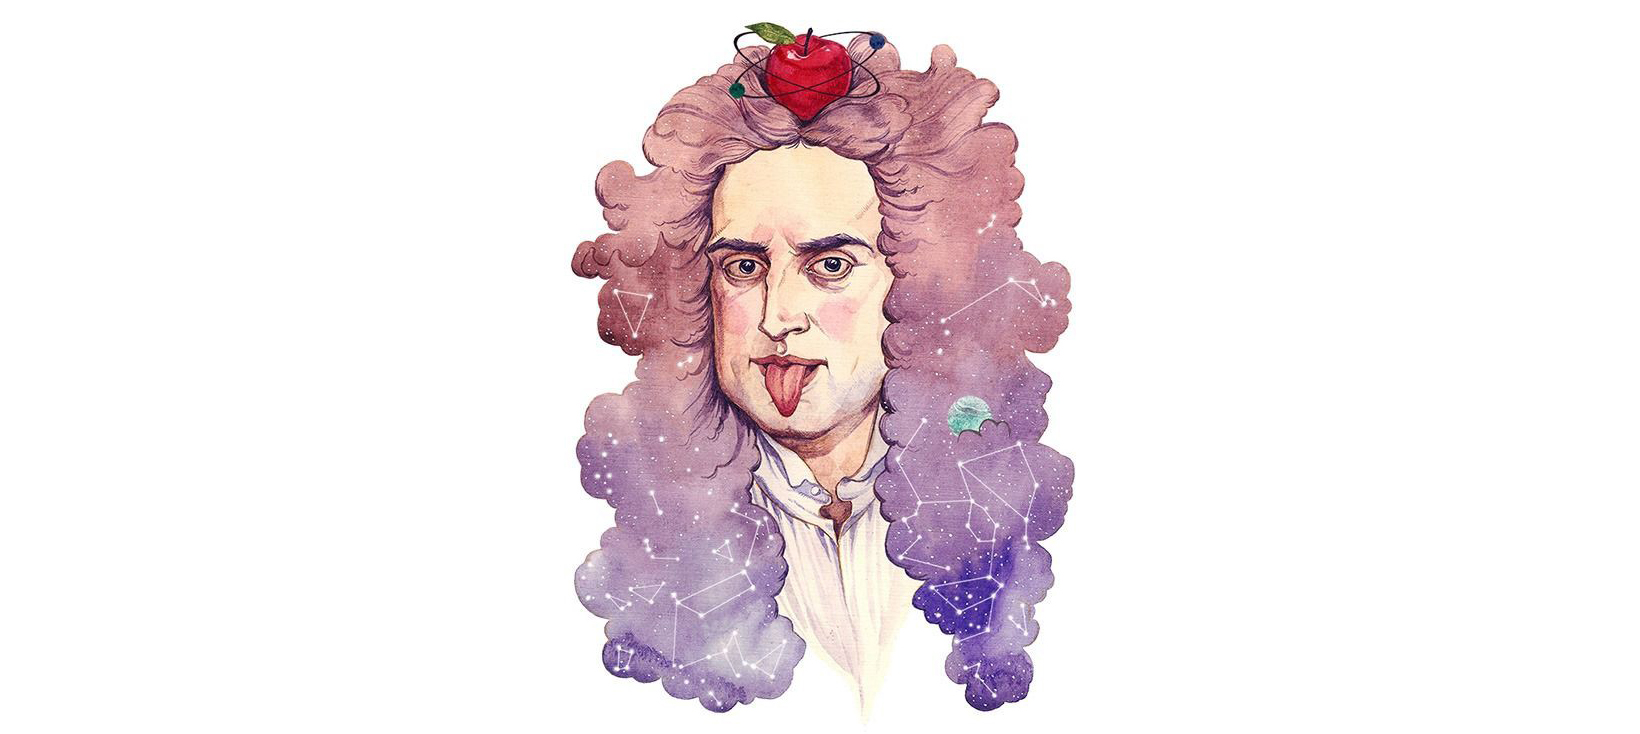 Isaac Newton (font: Pinterest).